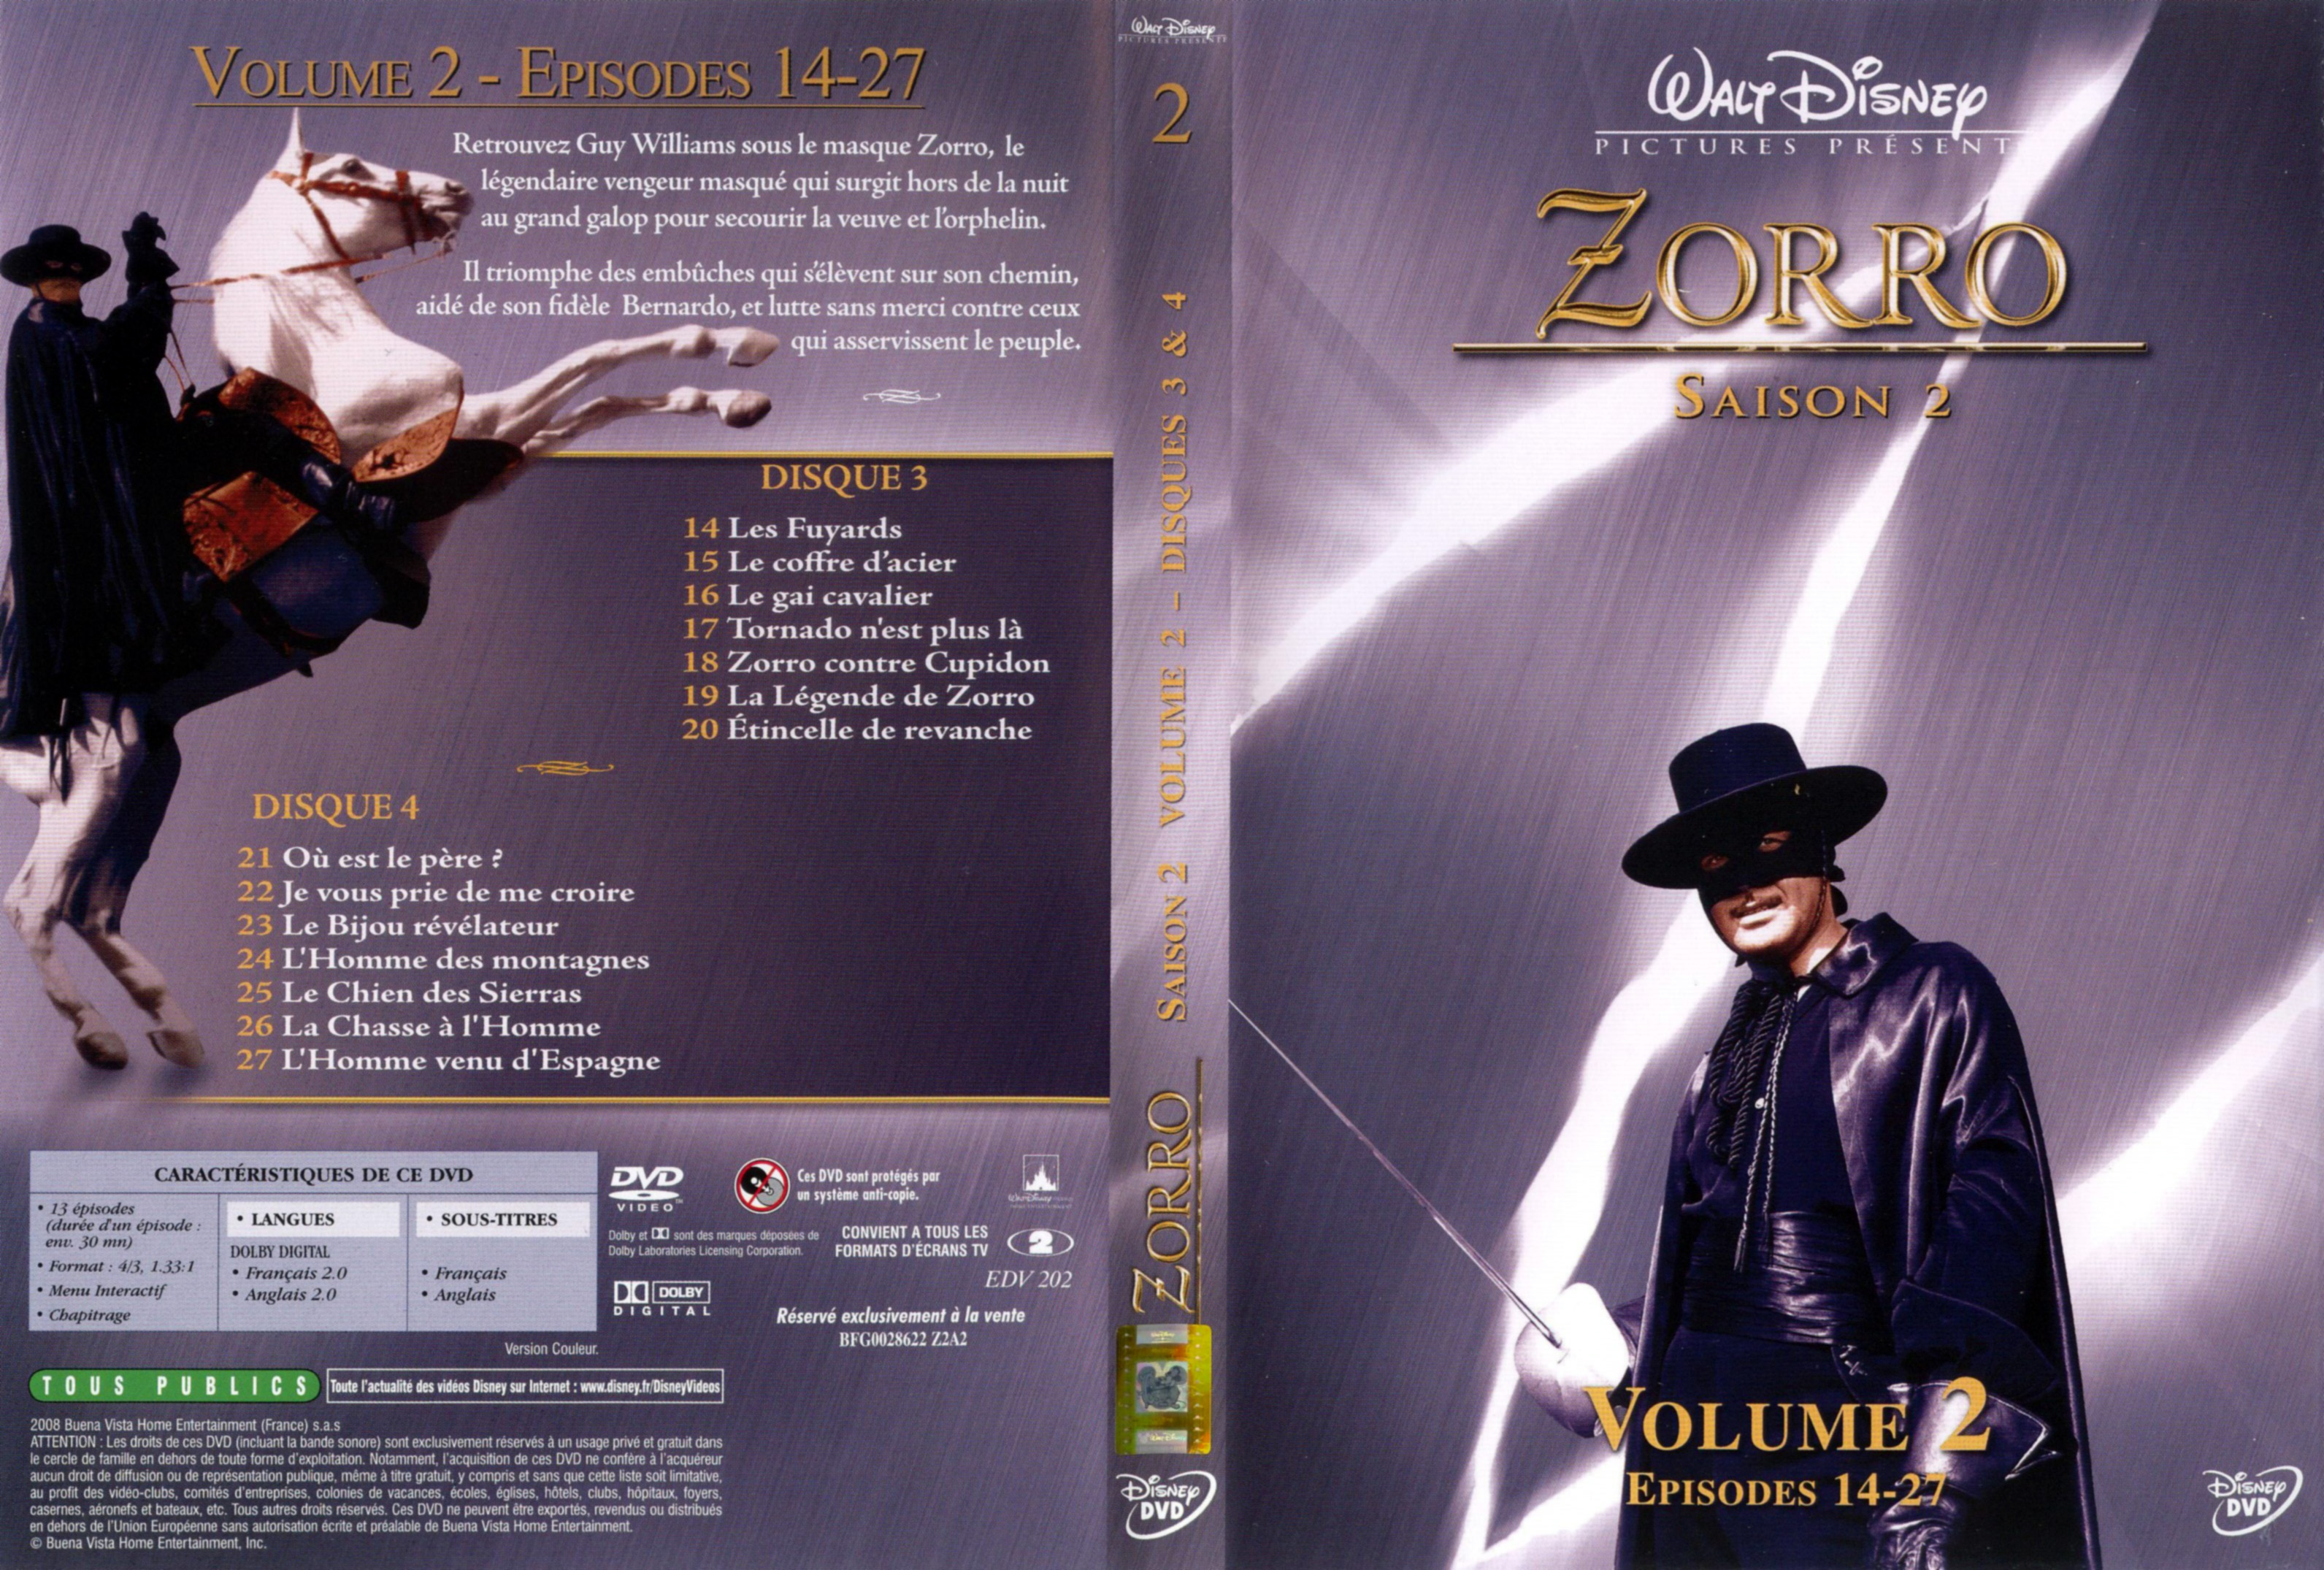 Jaquette DVD Zorro saison 2 vol 2